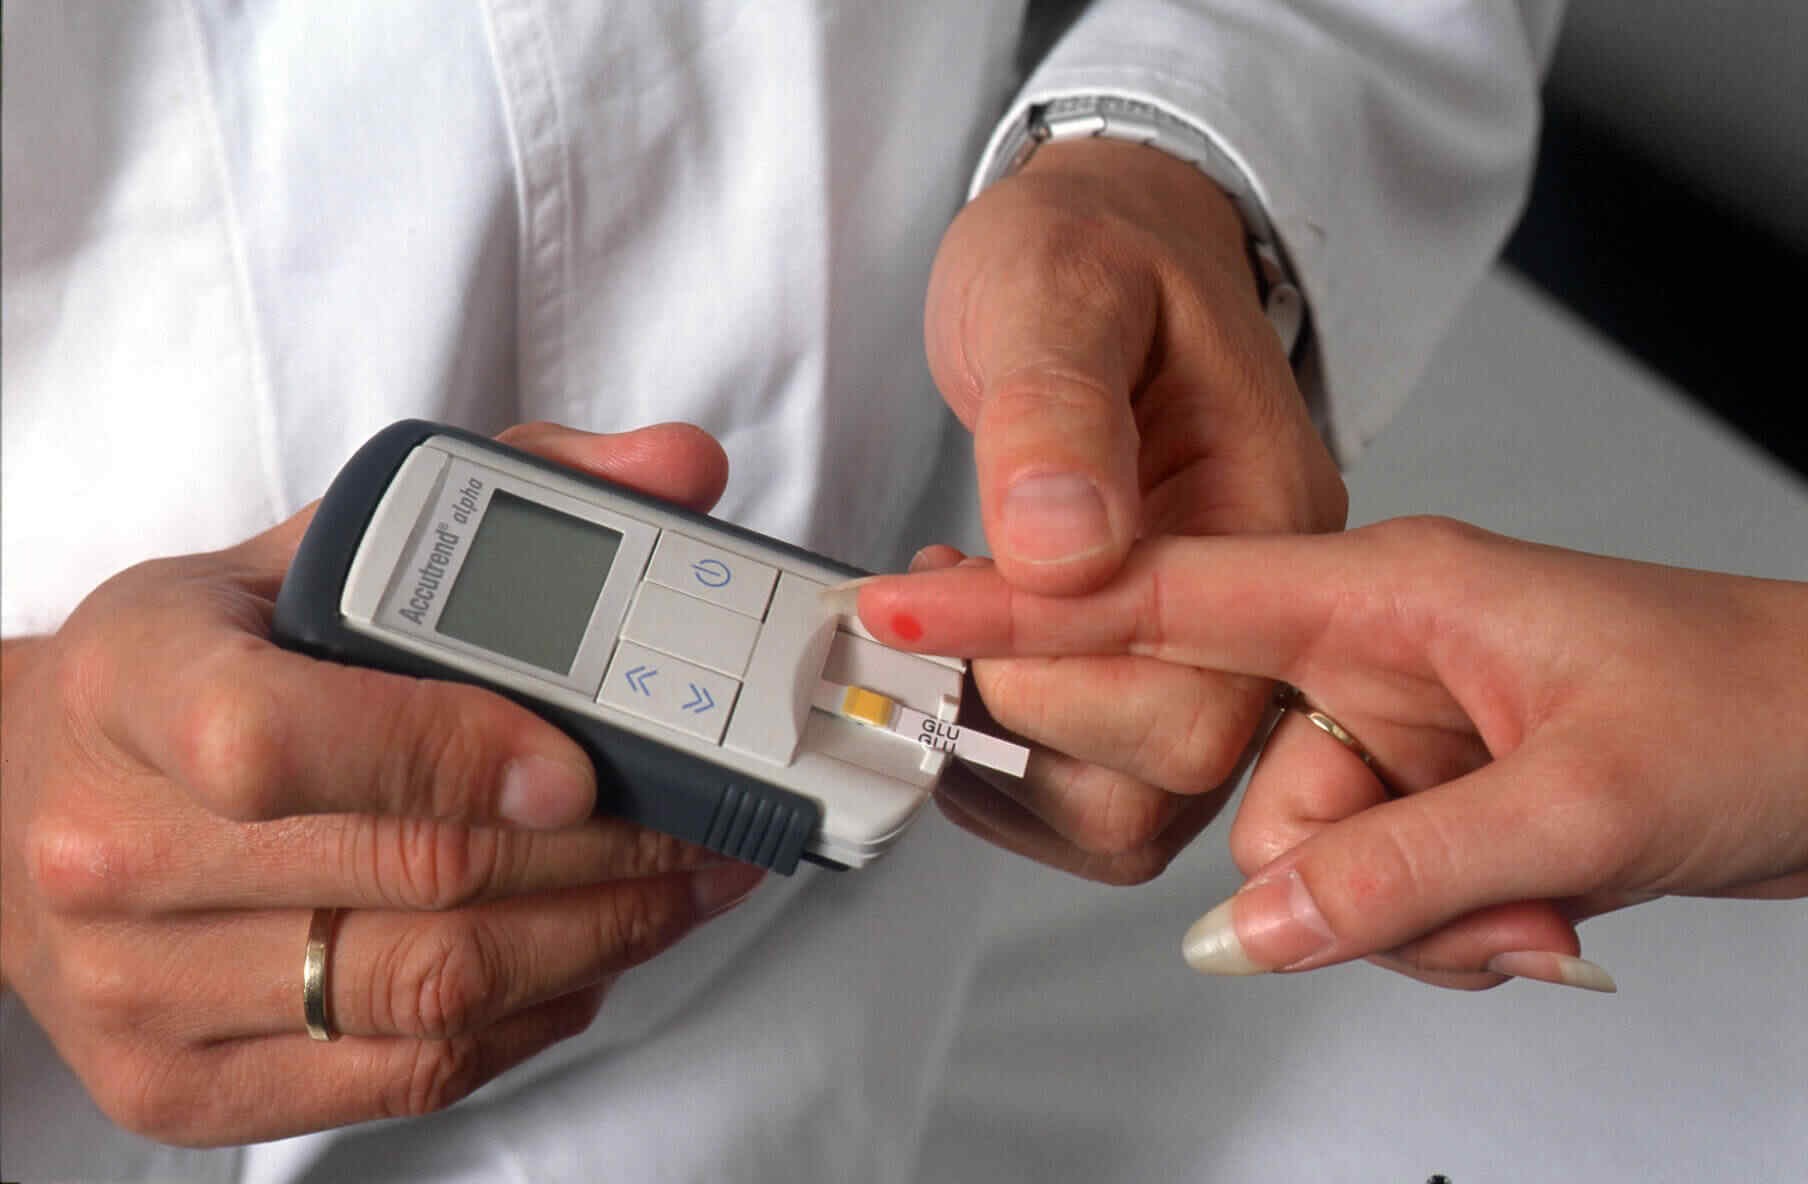 Диабет отзывы людей. Сахарный диабет. Измерение уровня сахара в крови. Люди больные сахарным диабетом. Измерение сахара в крови глюкометром.